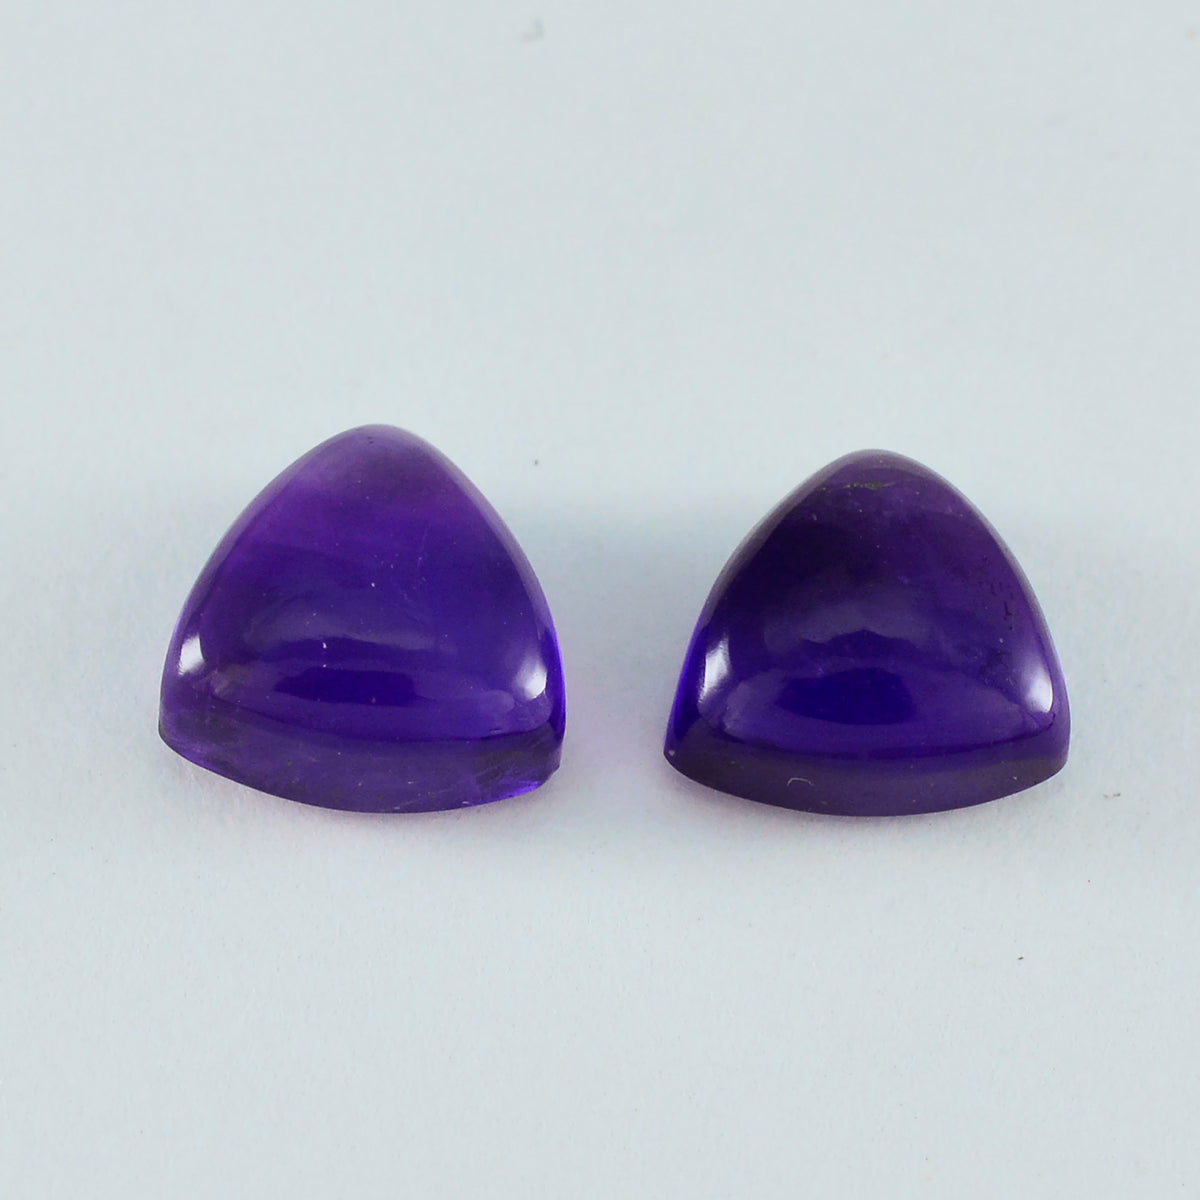 Riyogems 1PC Purple Amethyst Cabochon 12x12 mm Trillion Shape beauty Quality Gemstone